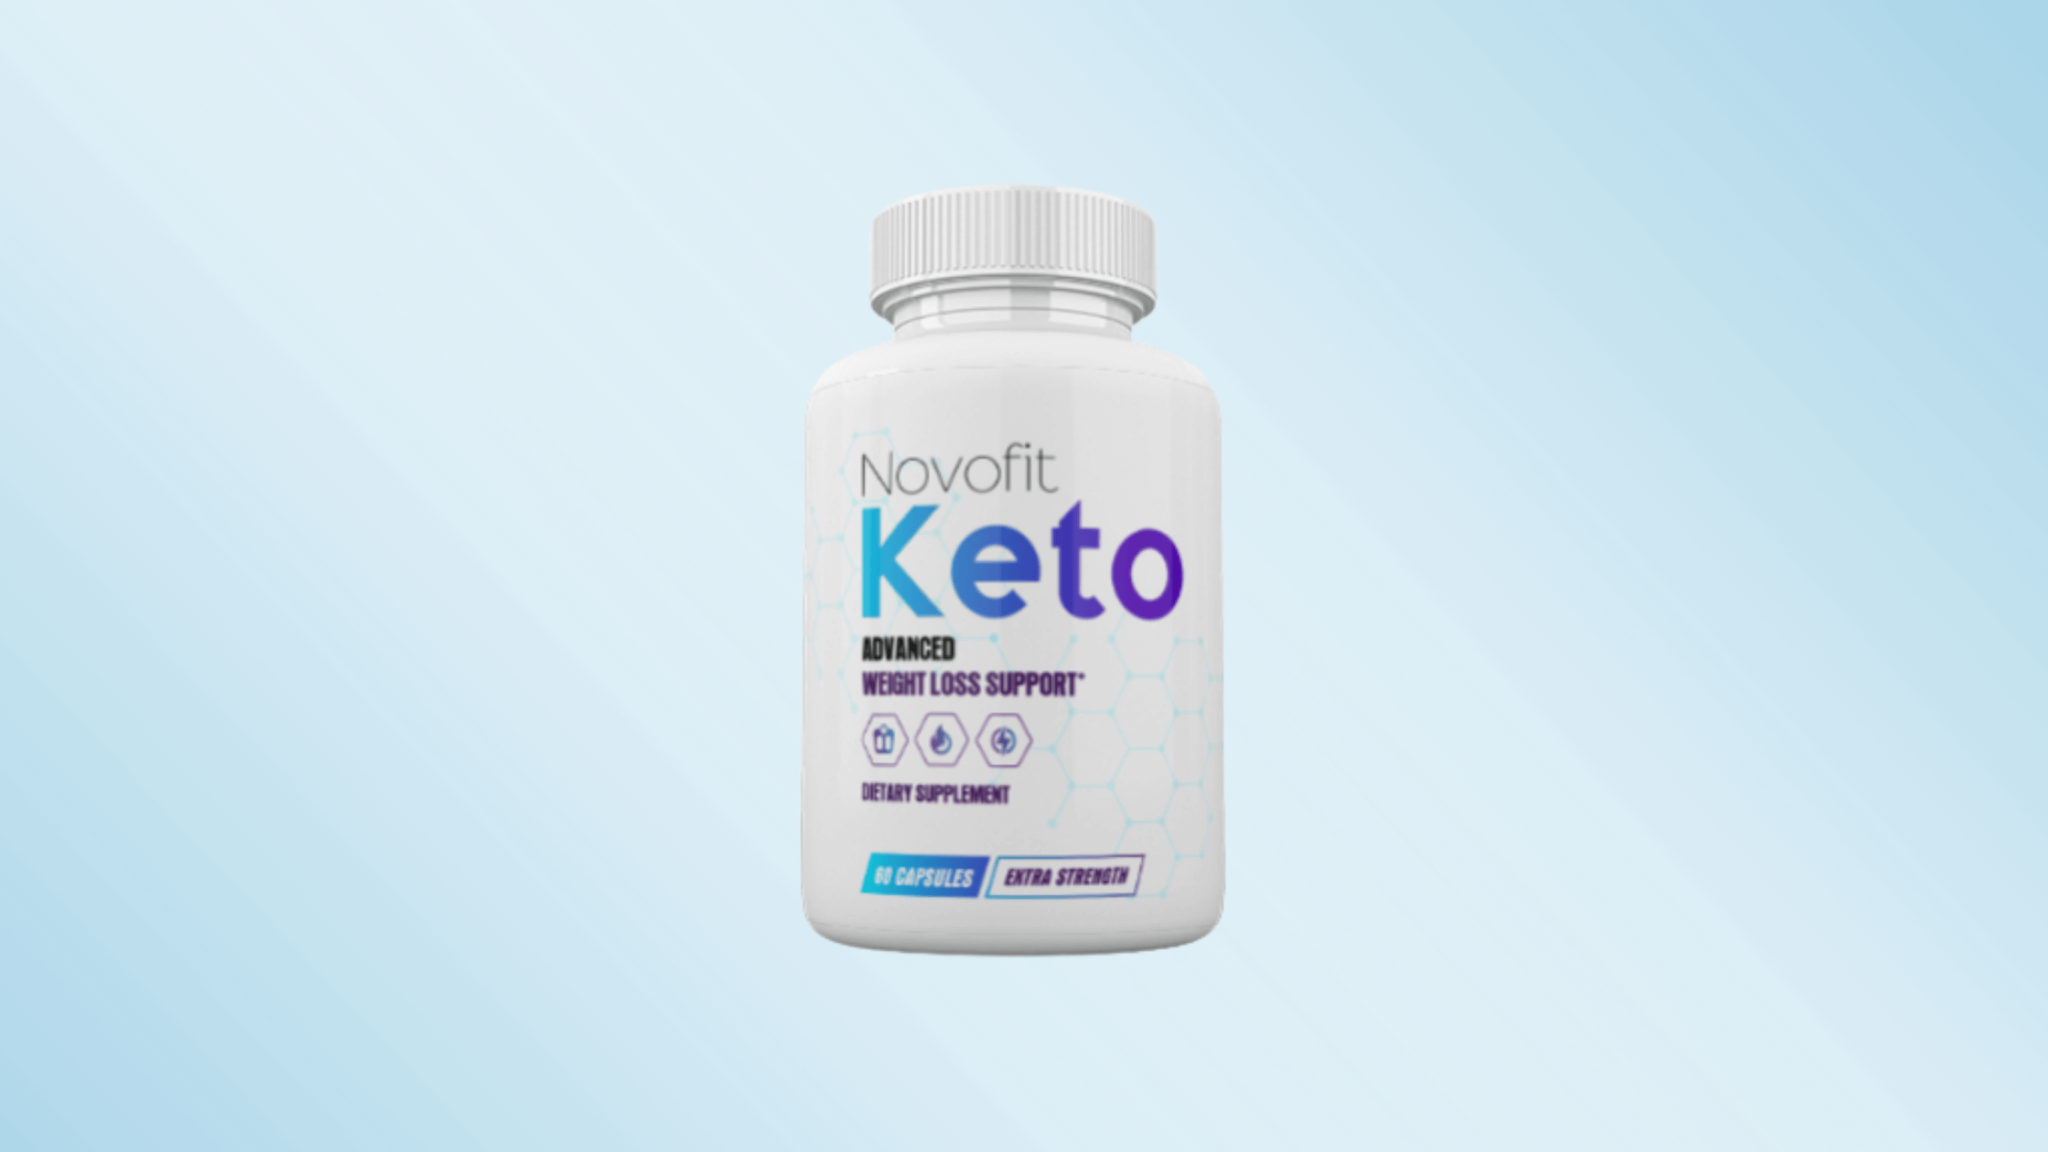 Novofit Keto Reviews